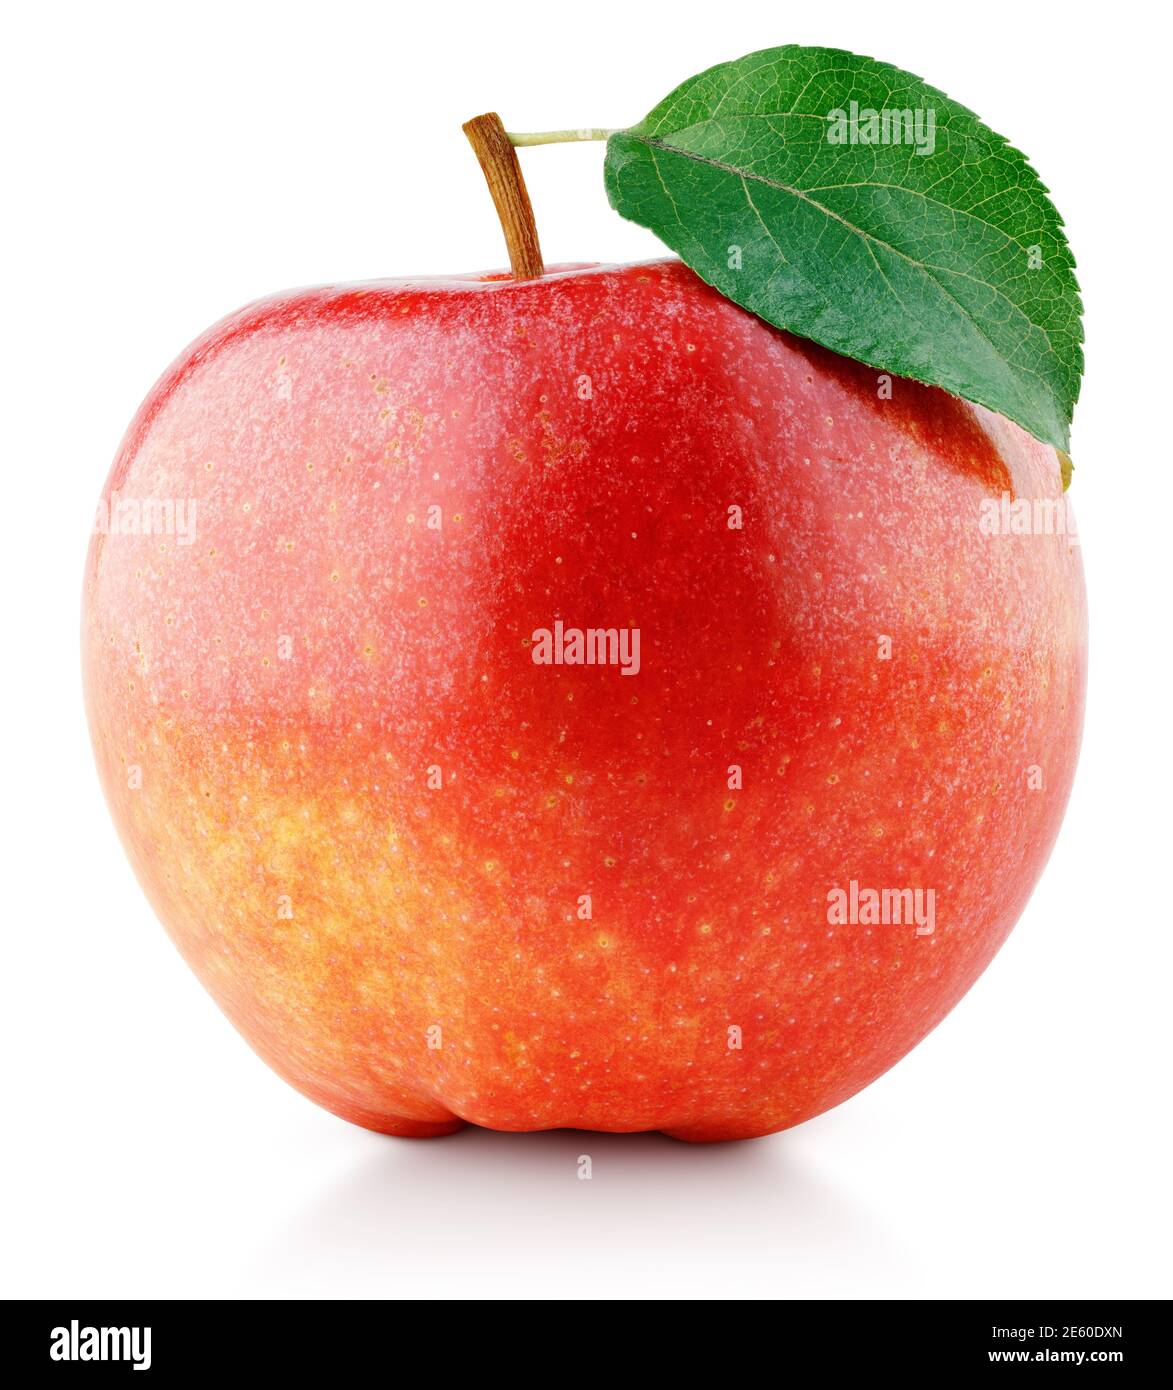 Singola mela rossa matura con foglia verde isolata su sfondo bianco. Mela rossa intera con tracciato di ritaglio. Profondità di campo completa Foto Stock